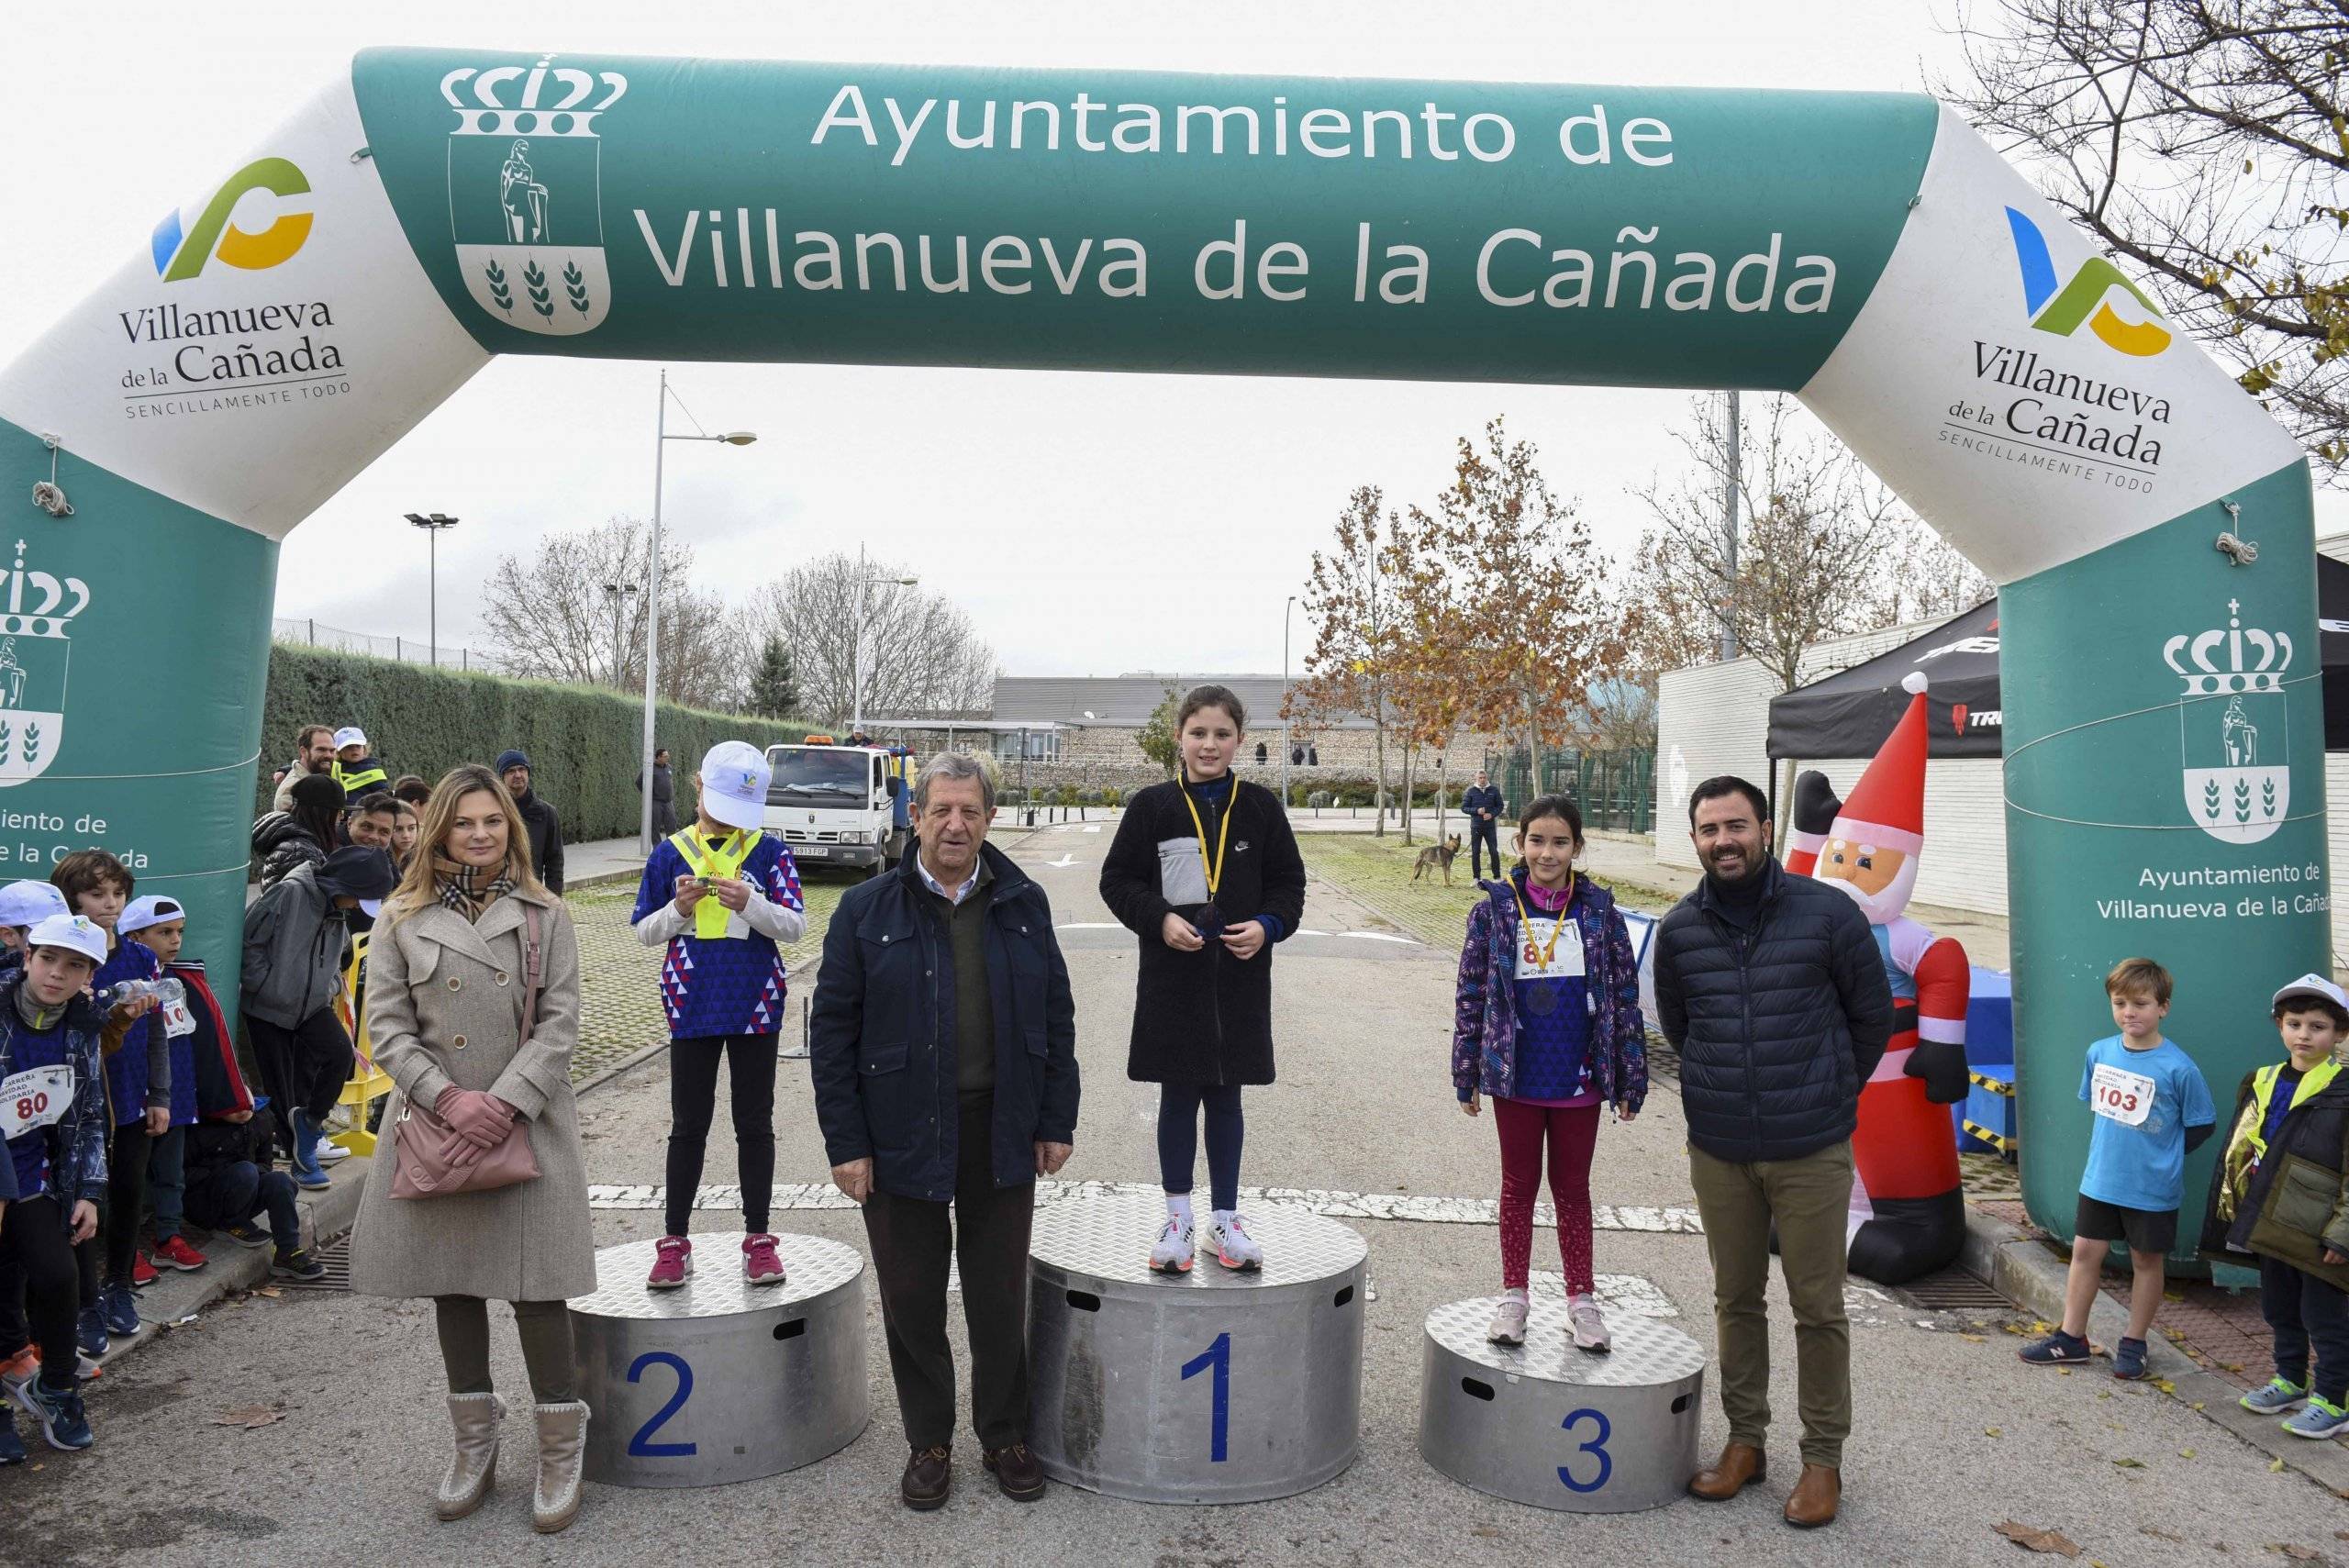 El alcalde, Luis Partida, el concejal de Deportes, Ignacio González, y la concejala de Participación Ciudadada, Lucía Paniagua, junto a las ganadoras de la categoría infantil femenina.